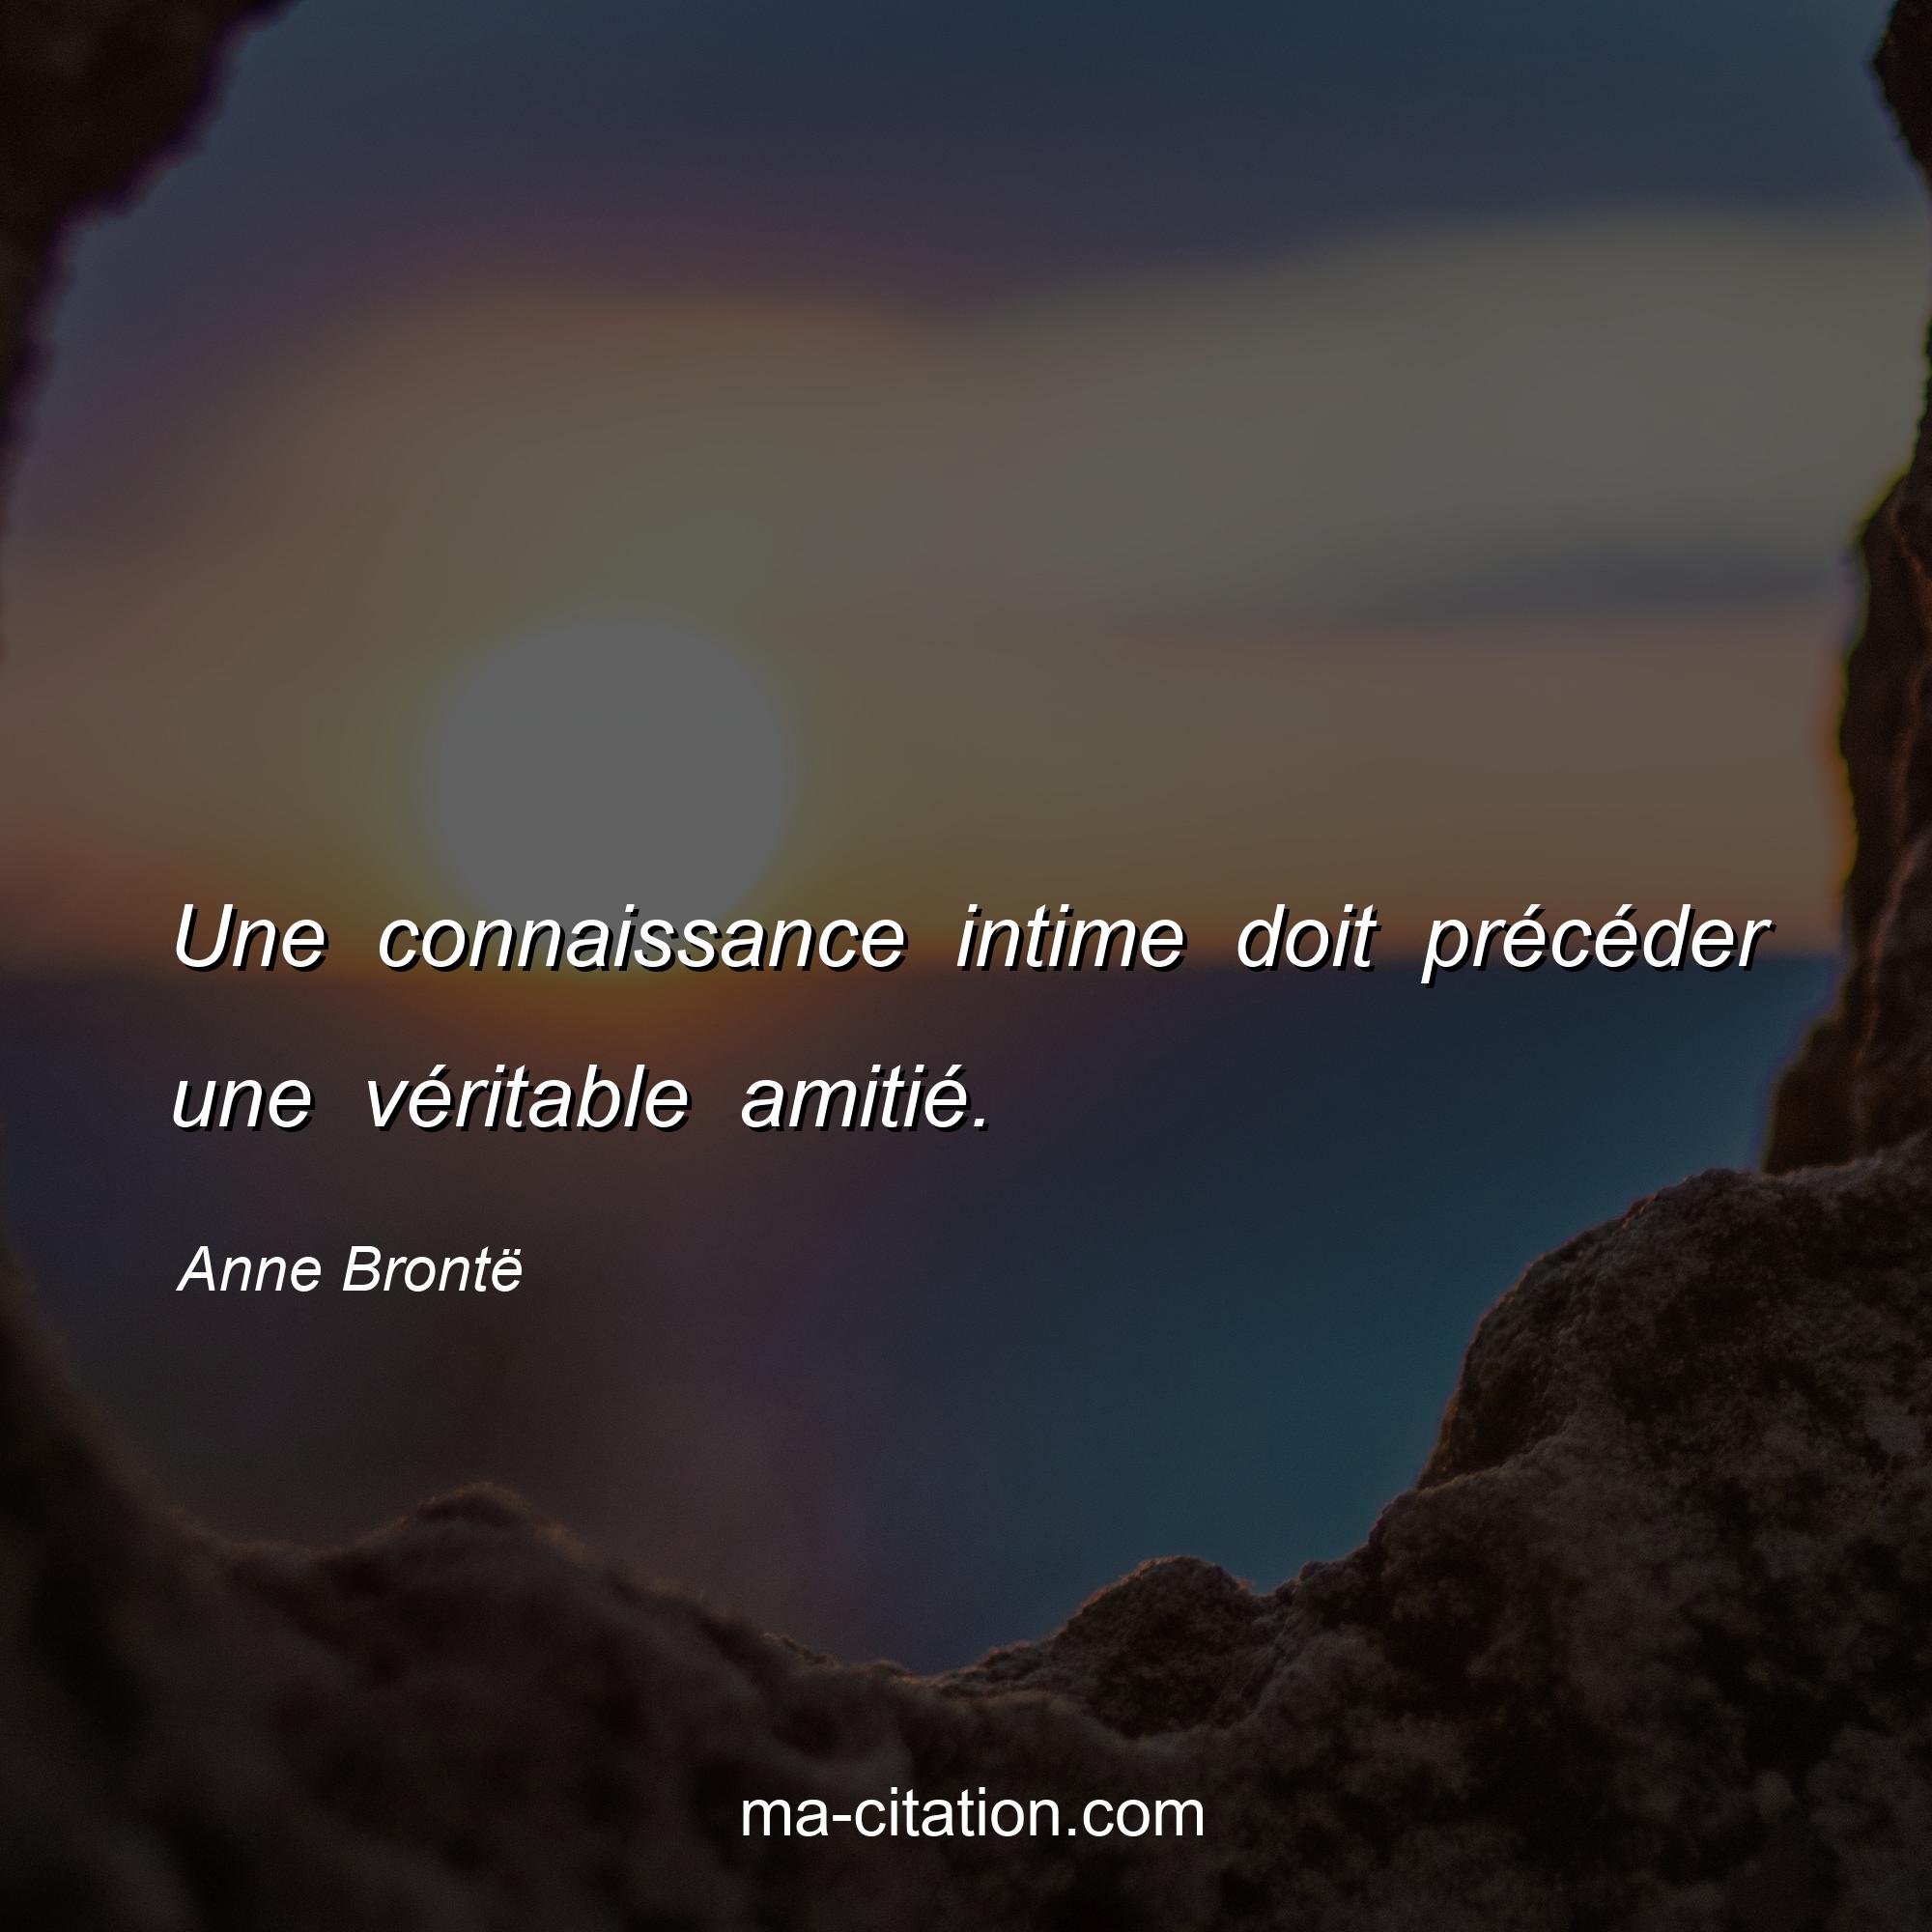 Anne Brontë : Une connaissance intime doit précéder une véritable amitié.